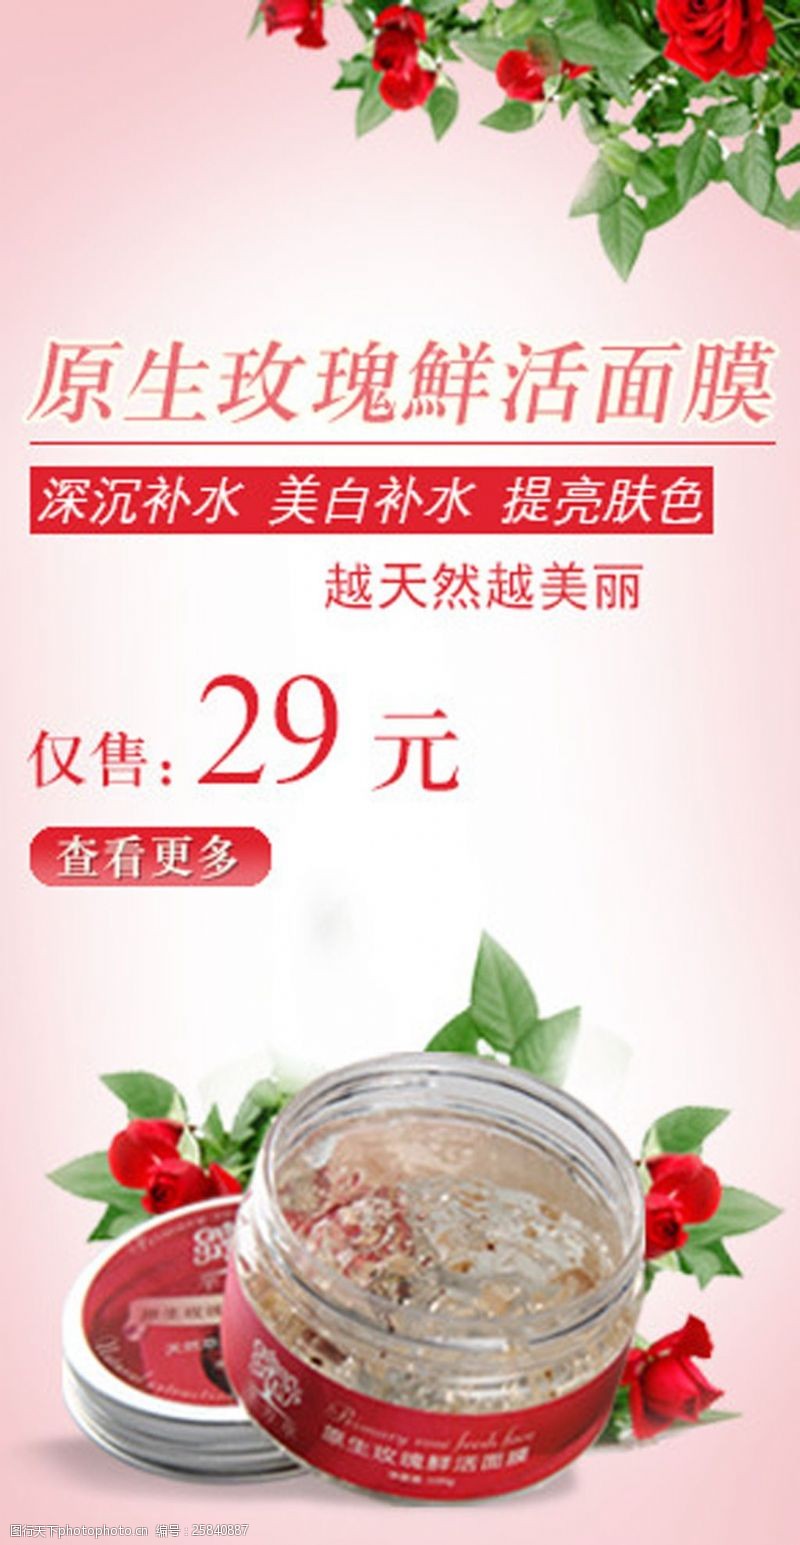 美容店宣传单玫瑰鲜活面膜护肤海报